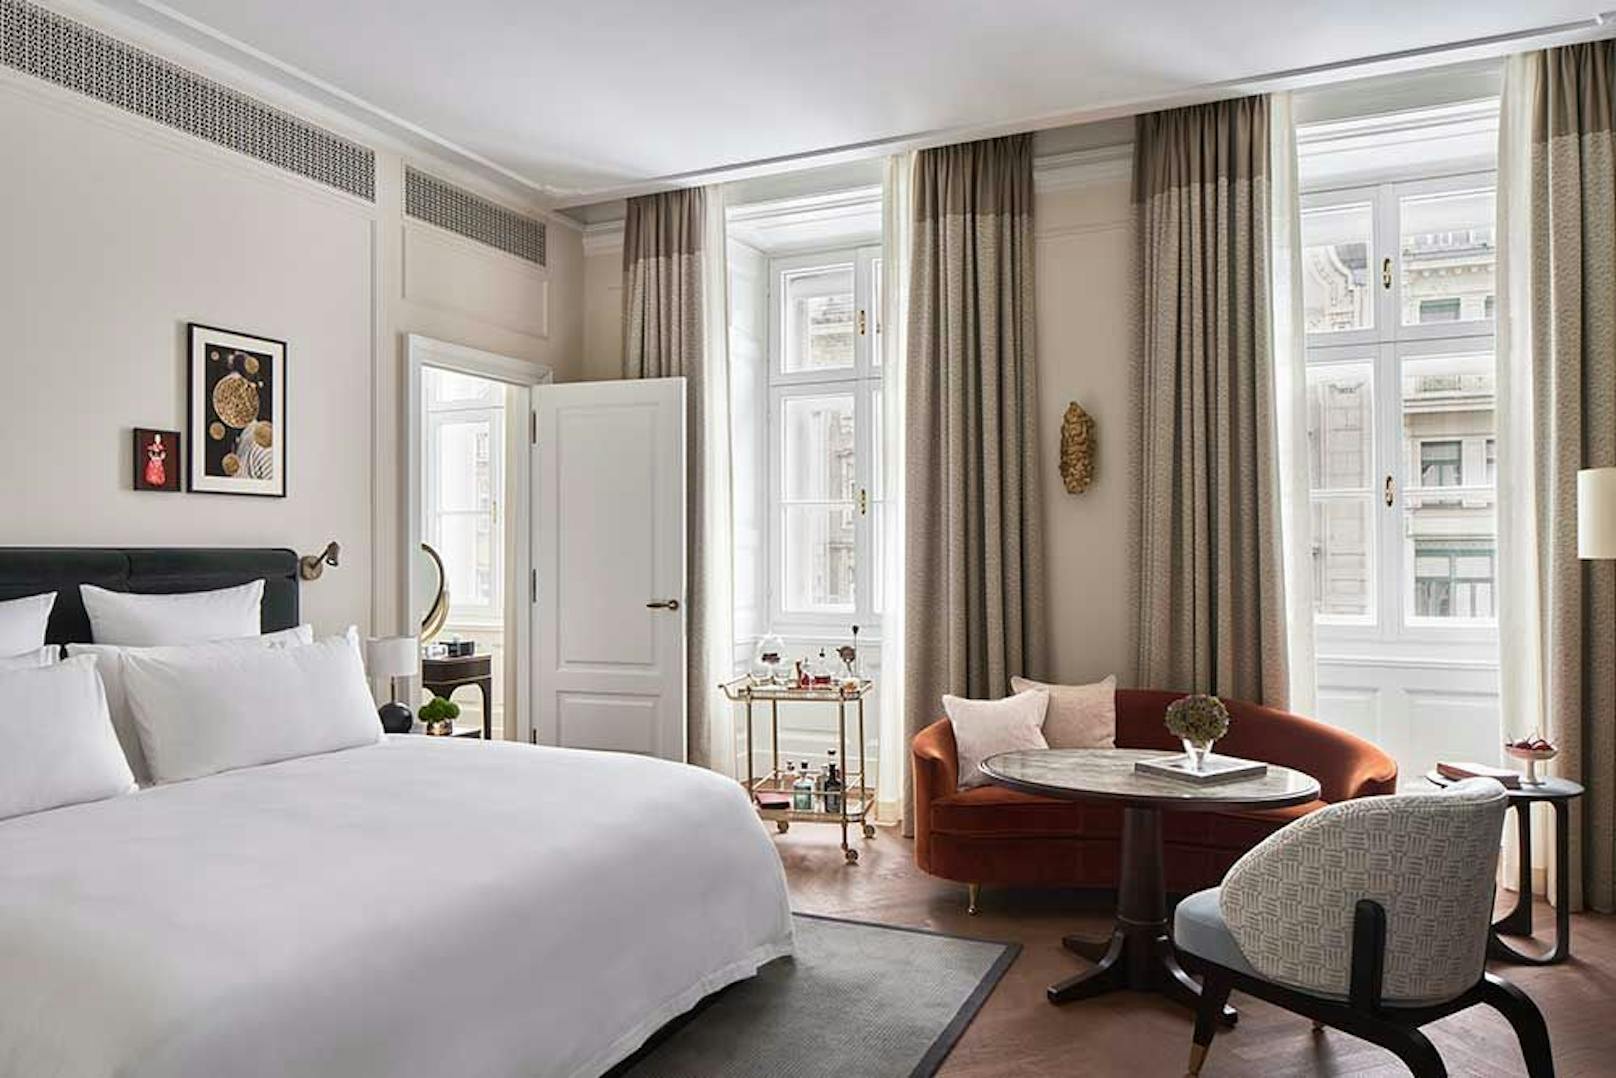 Salon Aurelie heißt diese Suite, die luxusverwöhnte Gäste locken soll.&nbsp;